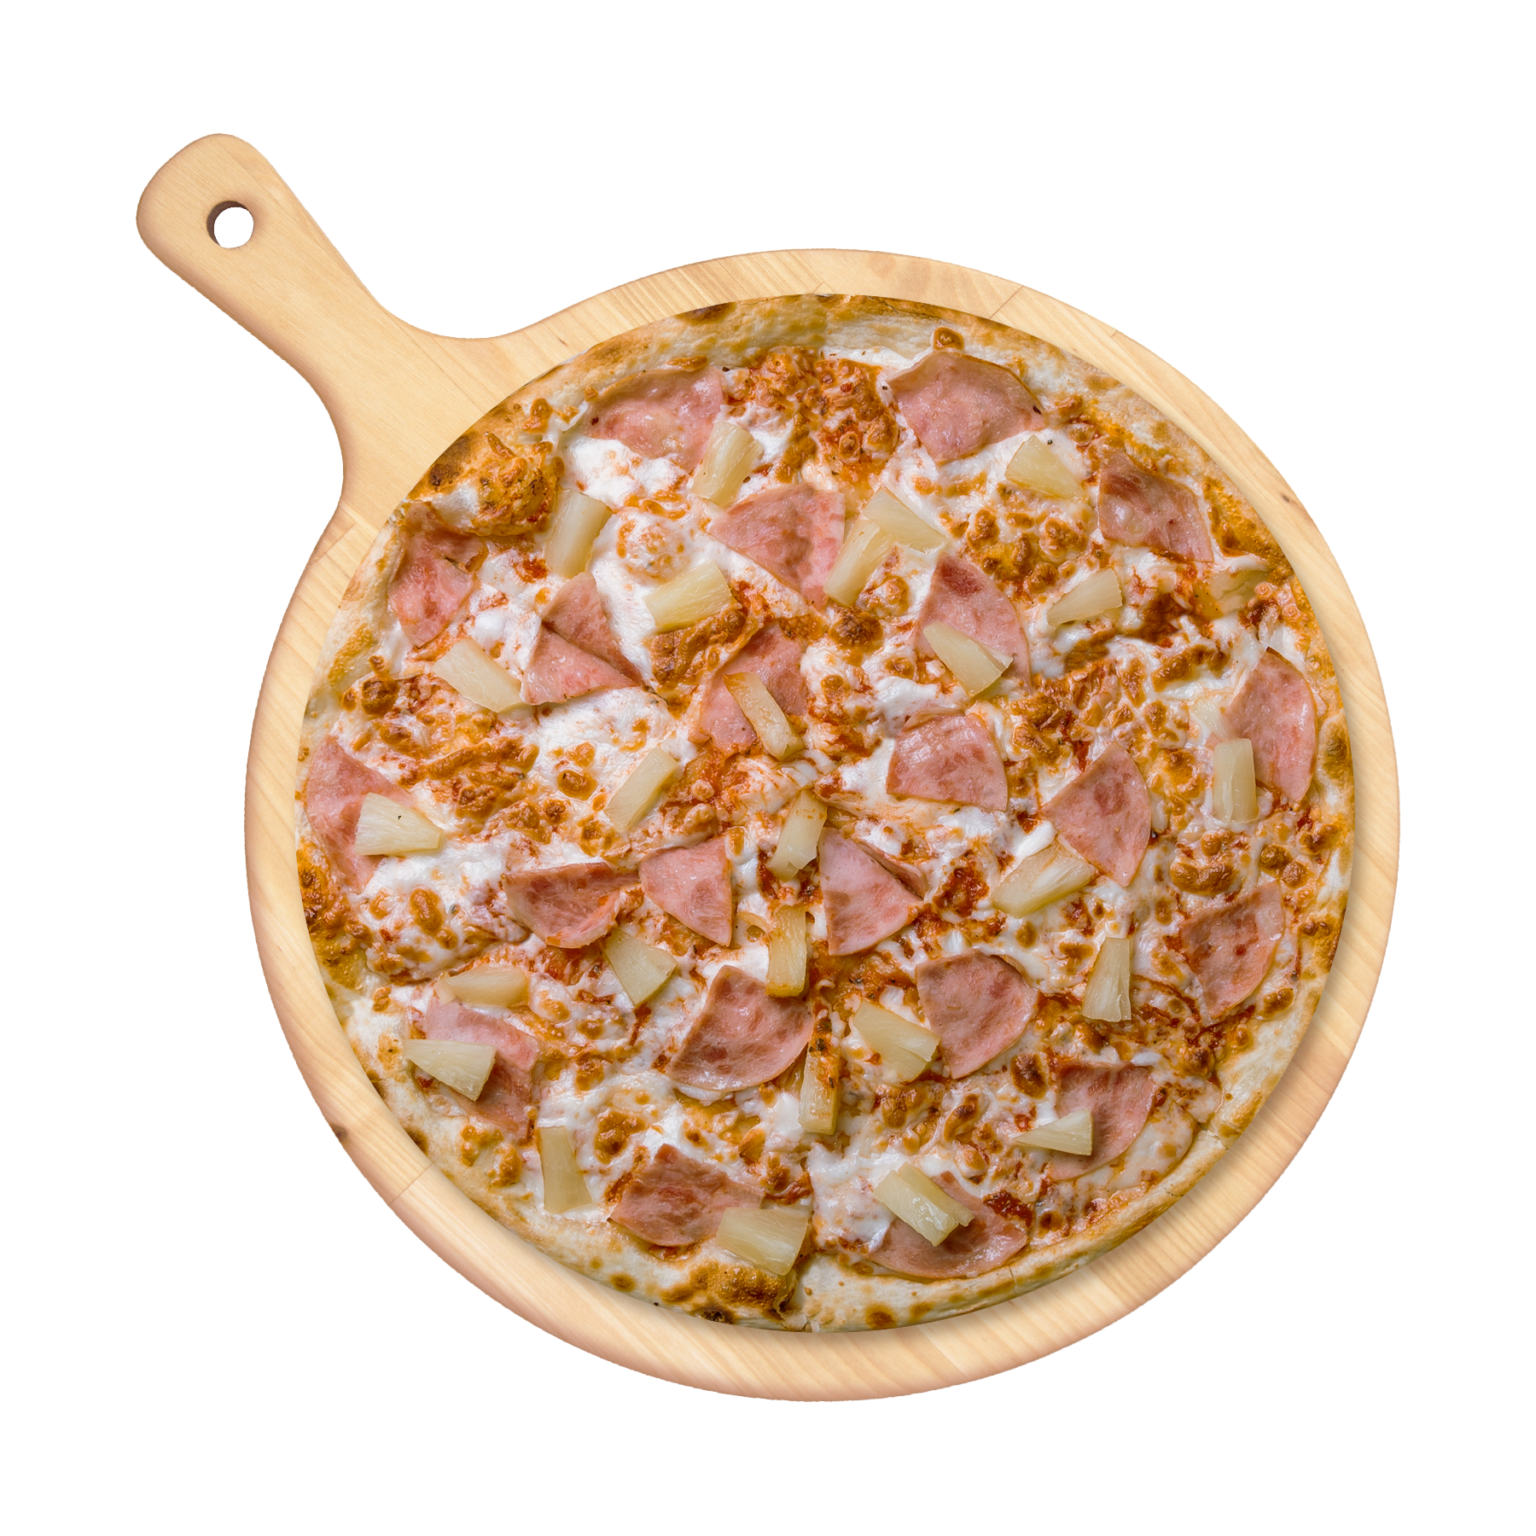 сколько калорий в одном куске пиццы гавайская фото 118